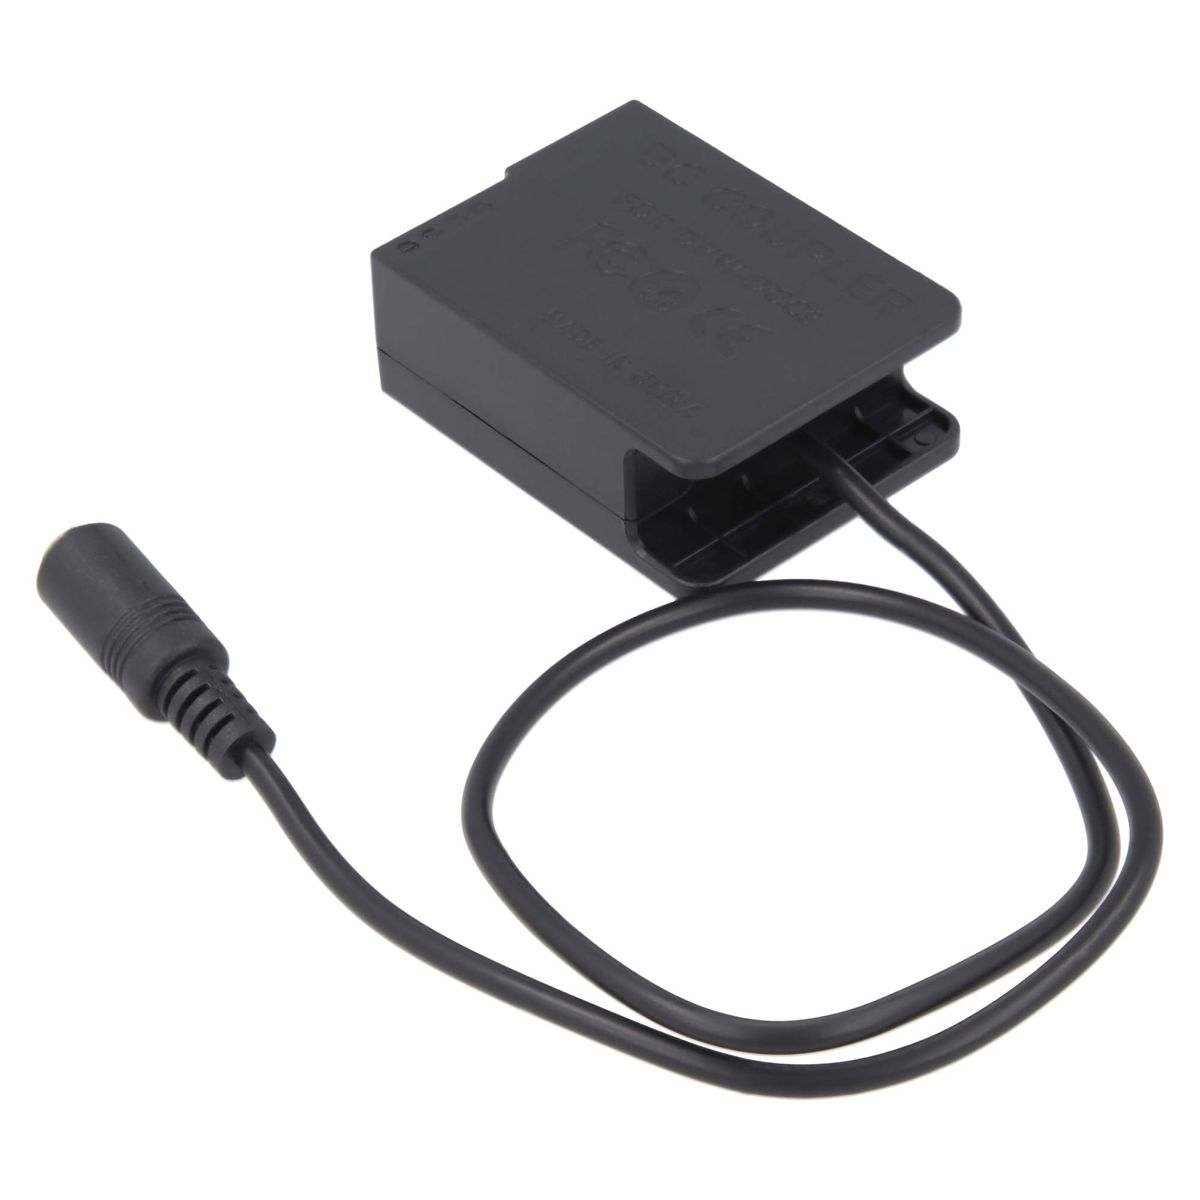 AKKU-KING Ladegerät + Adapter kompatibel mit Panasonic, keine Angabe USB-C DCC8 Kuppler Panasonic